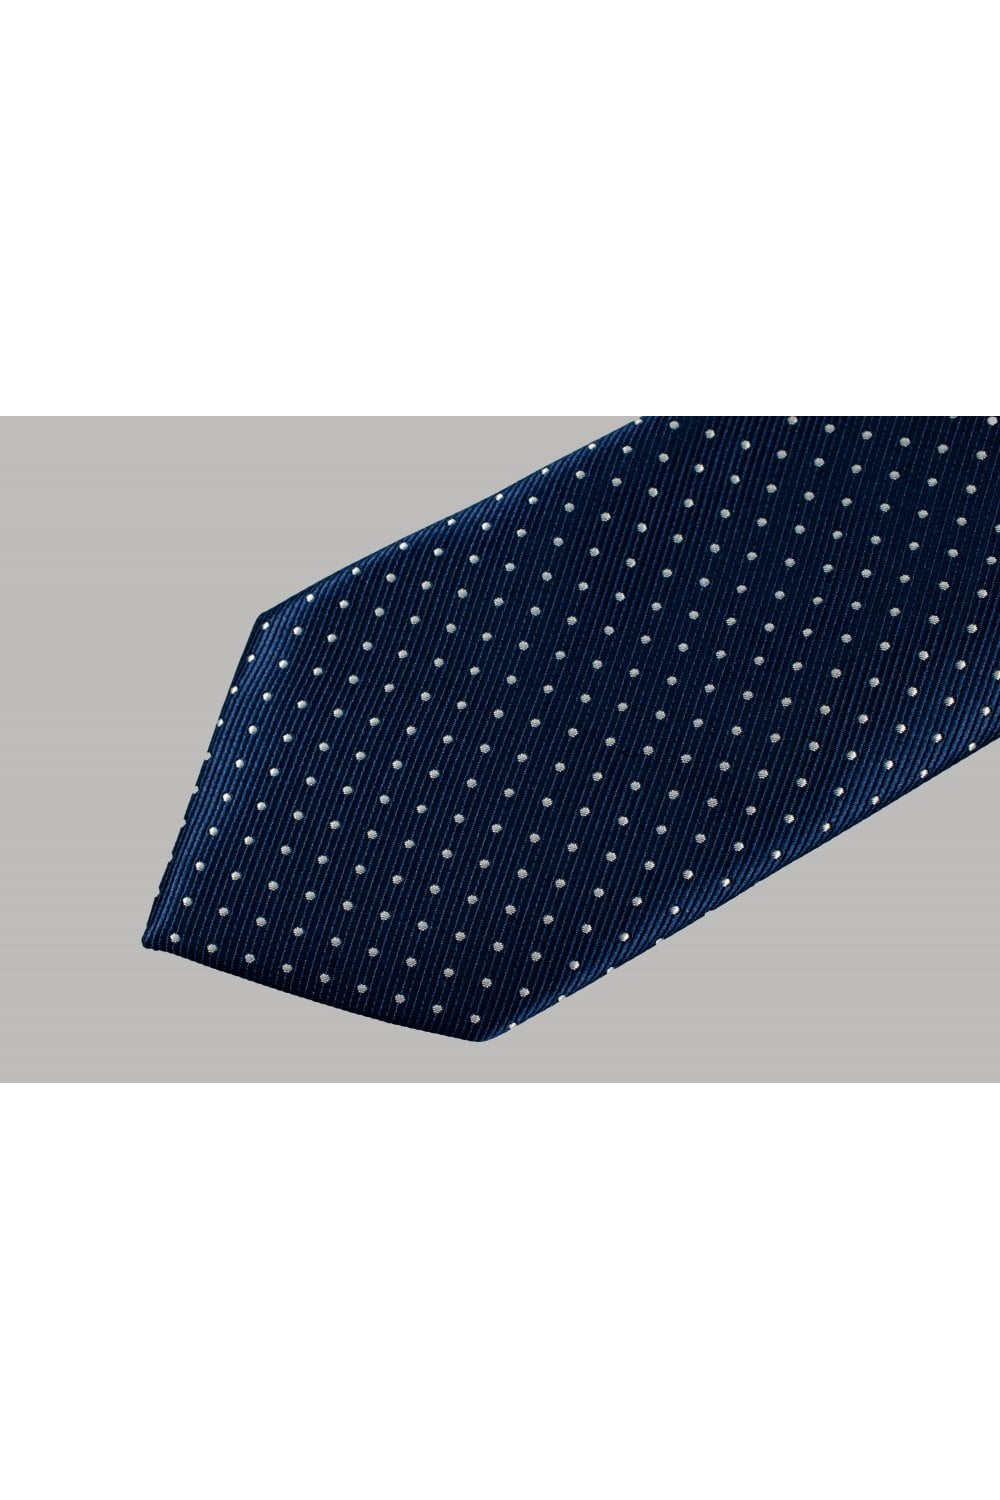 Krawattenset Navy Dots - Cavani - gentleman set